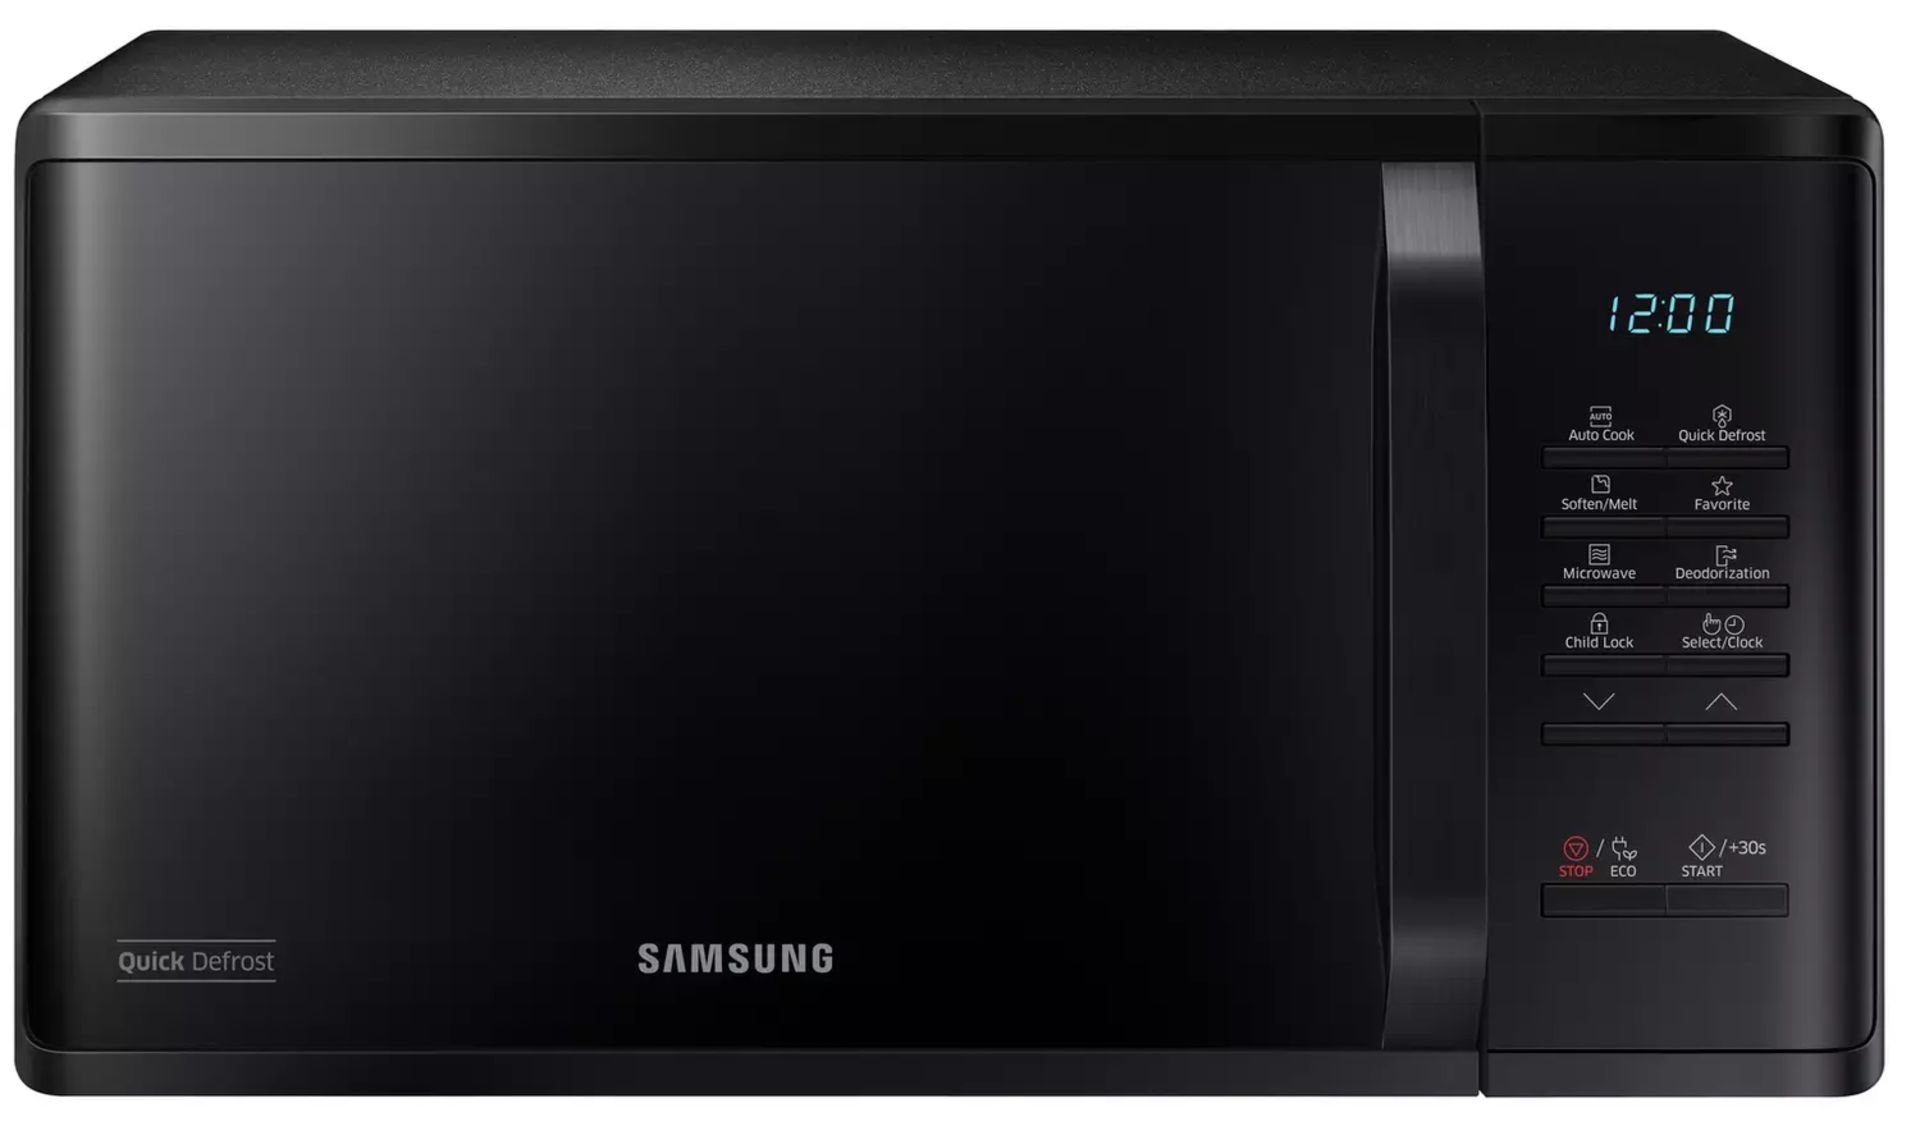 Samsung 800W 23L Standard Microwave MS23K3513AK - Black RRP £150